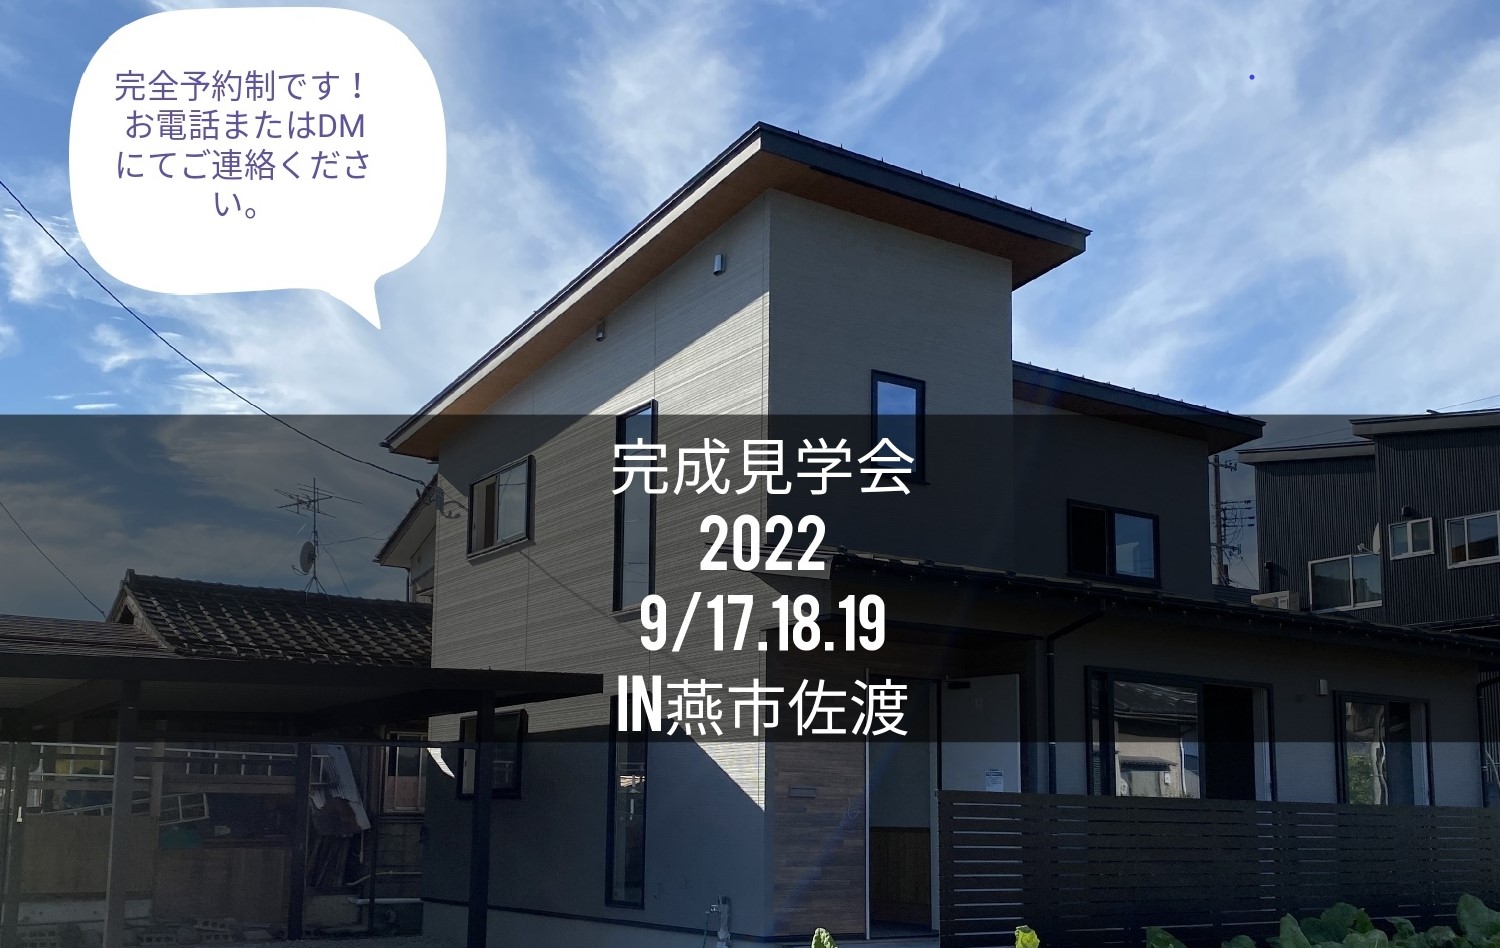 2022/09.17.18.19日に新築完成見学会を開催いたします！